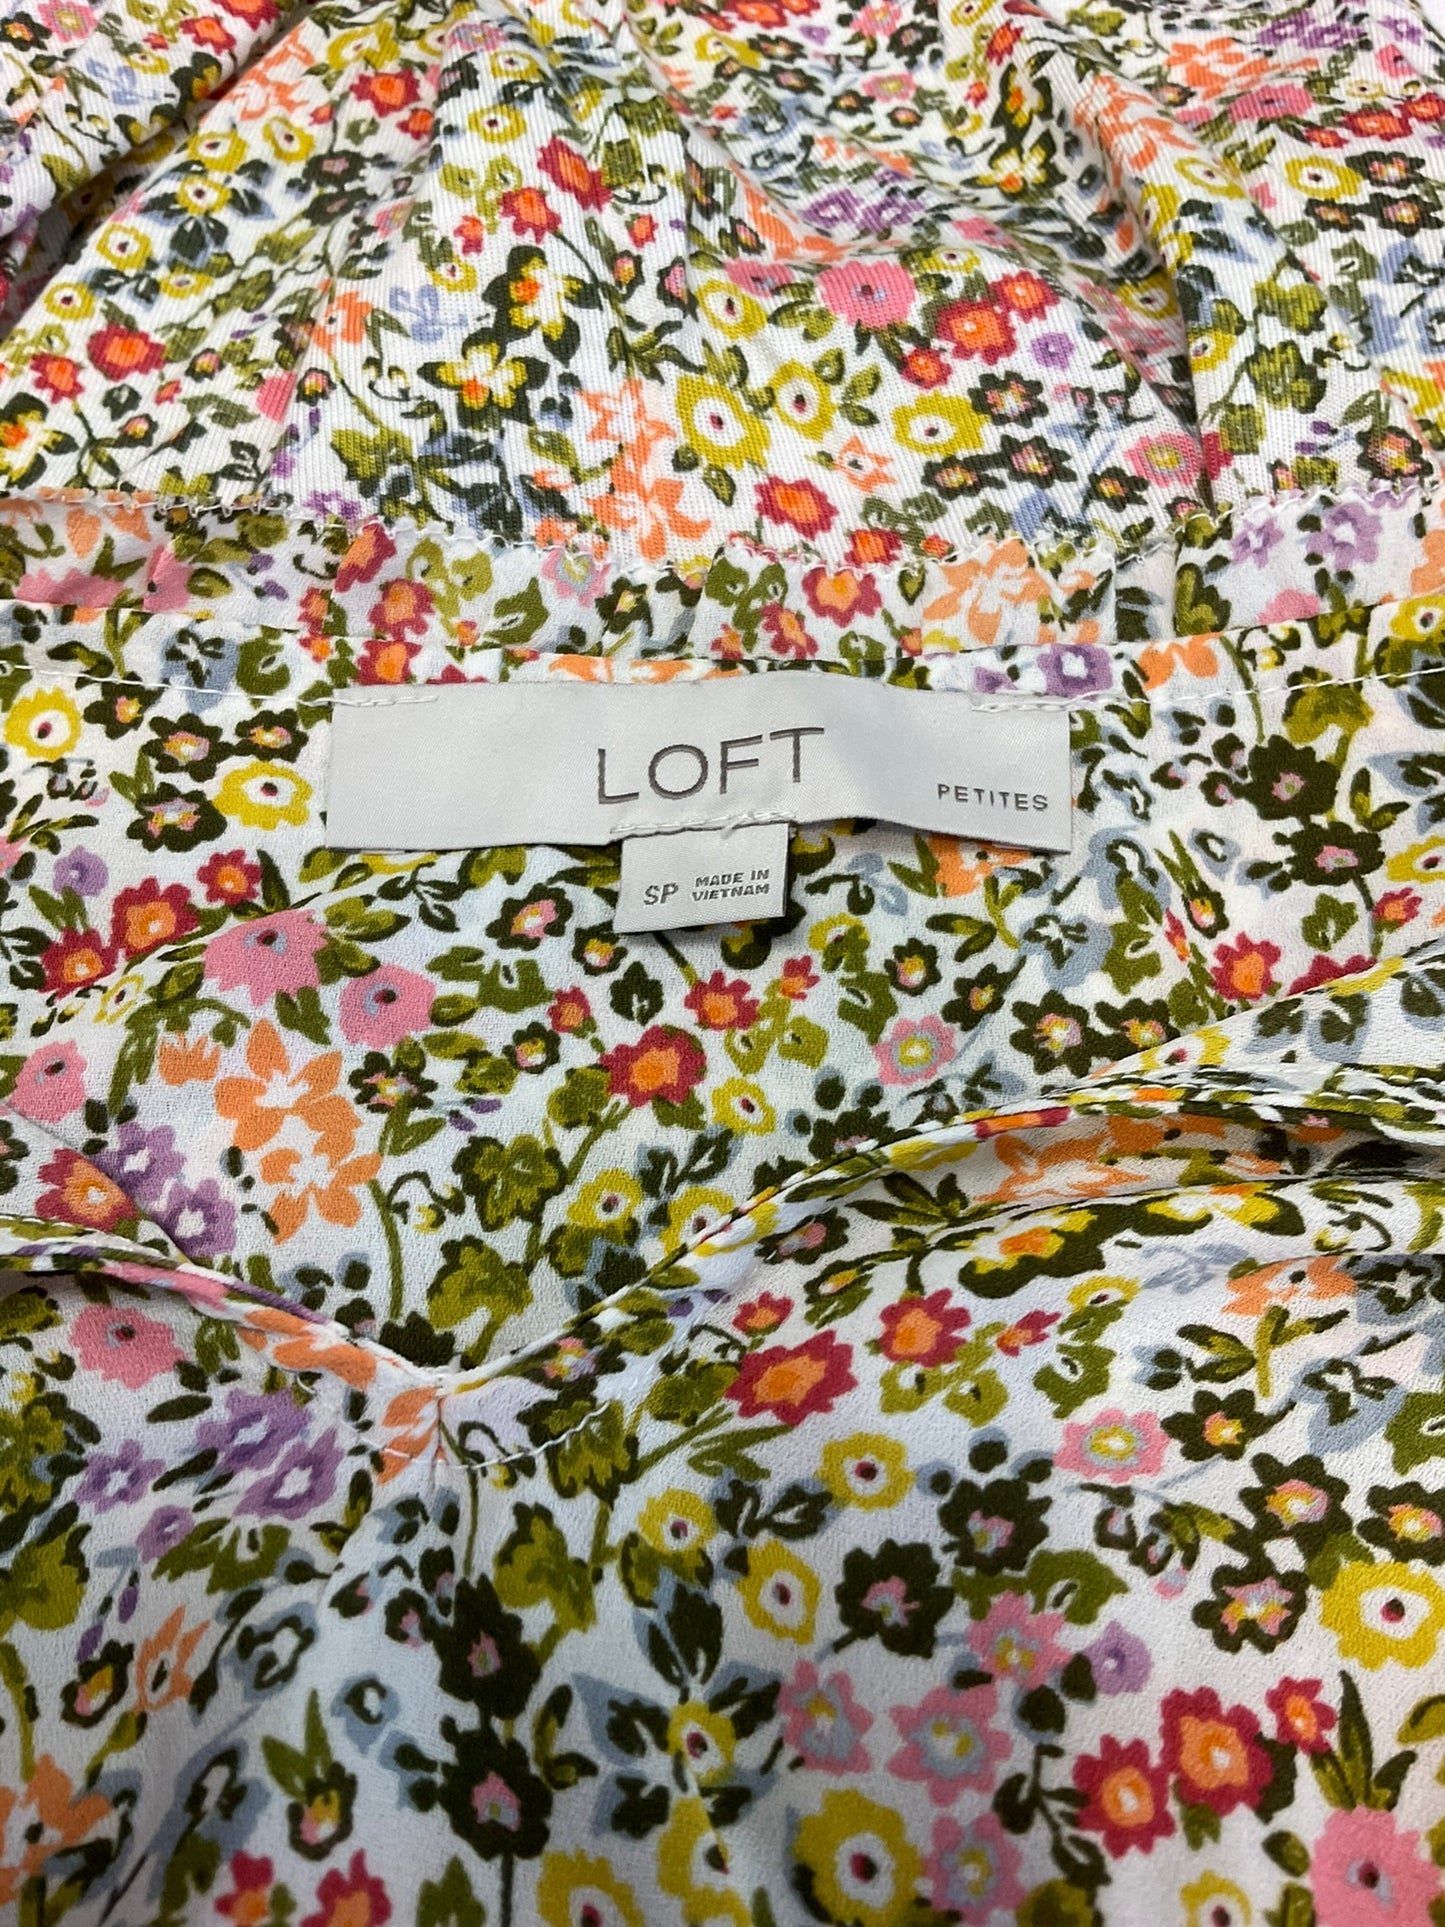 LOFT Petite Floral Blouse, Size SP